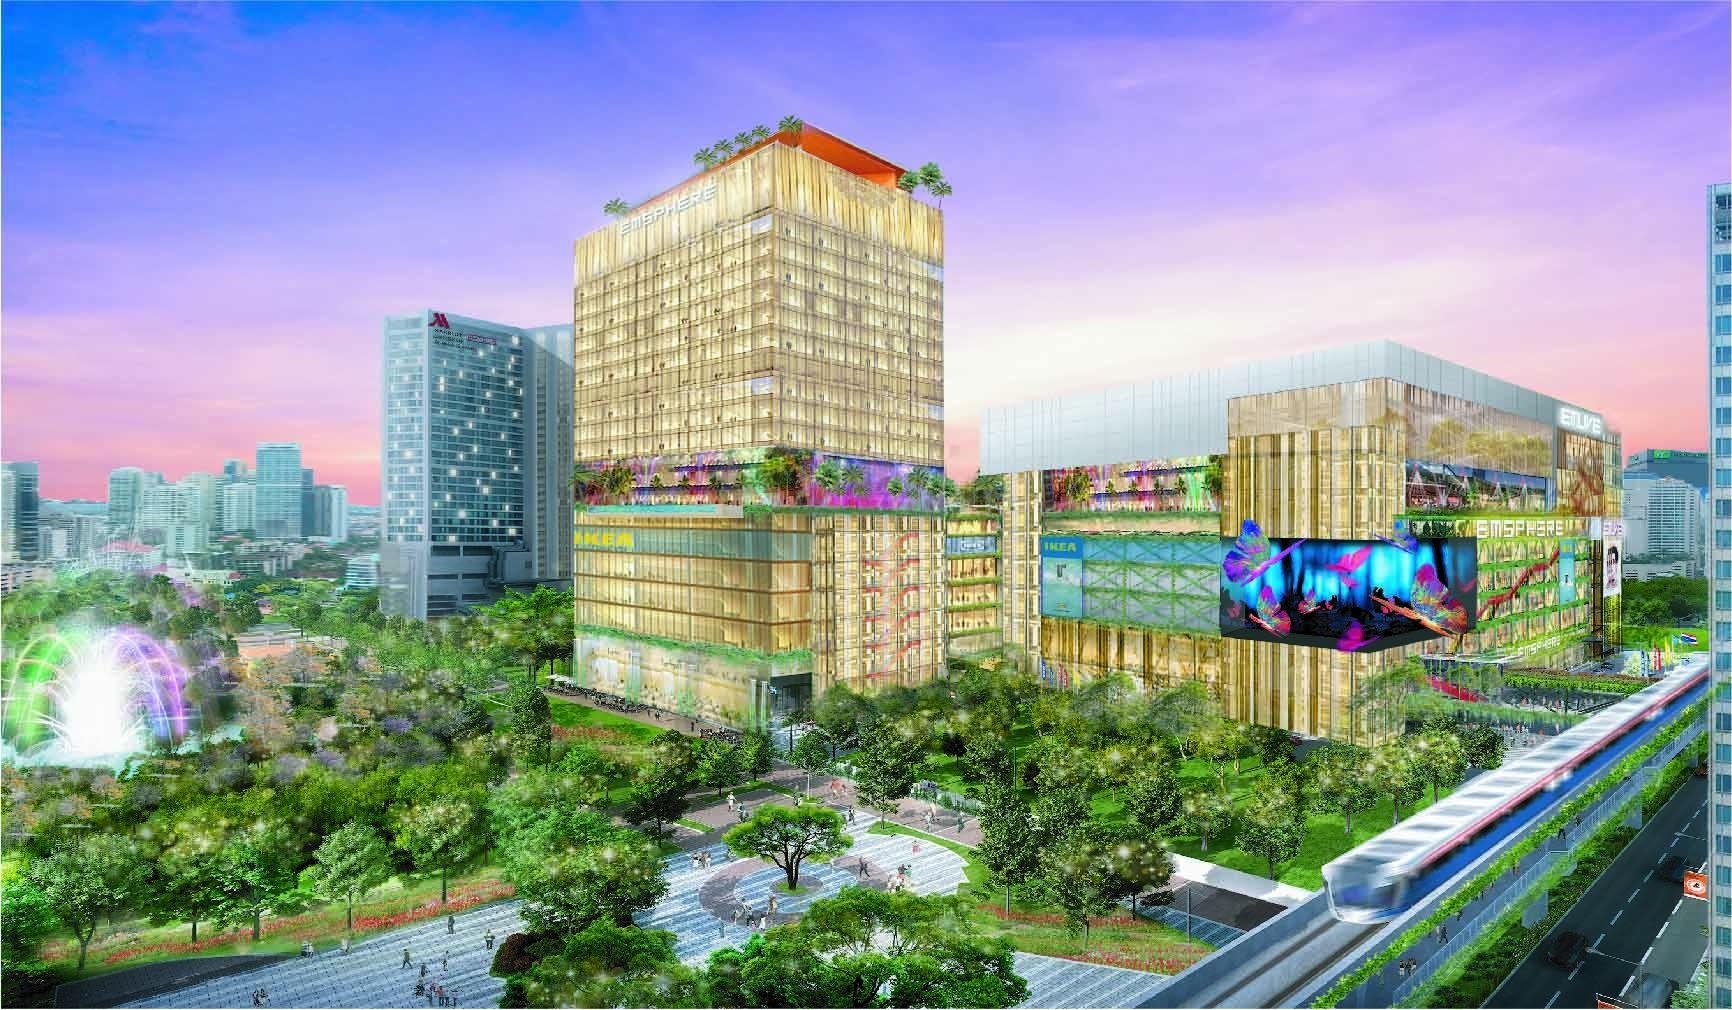 BANGKOK] Emporium Mall Luxury Shopping Mall On Sukhumvit Road